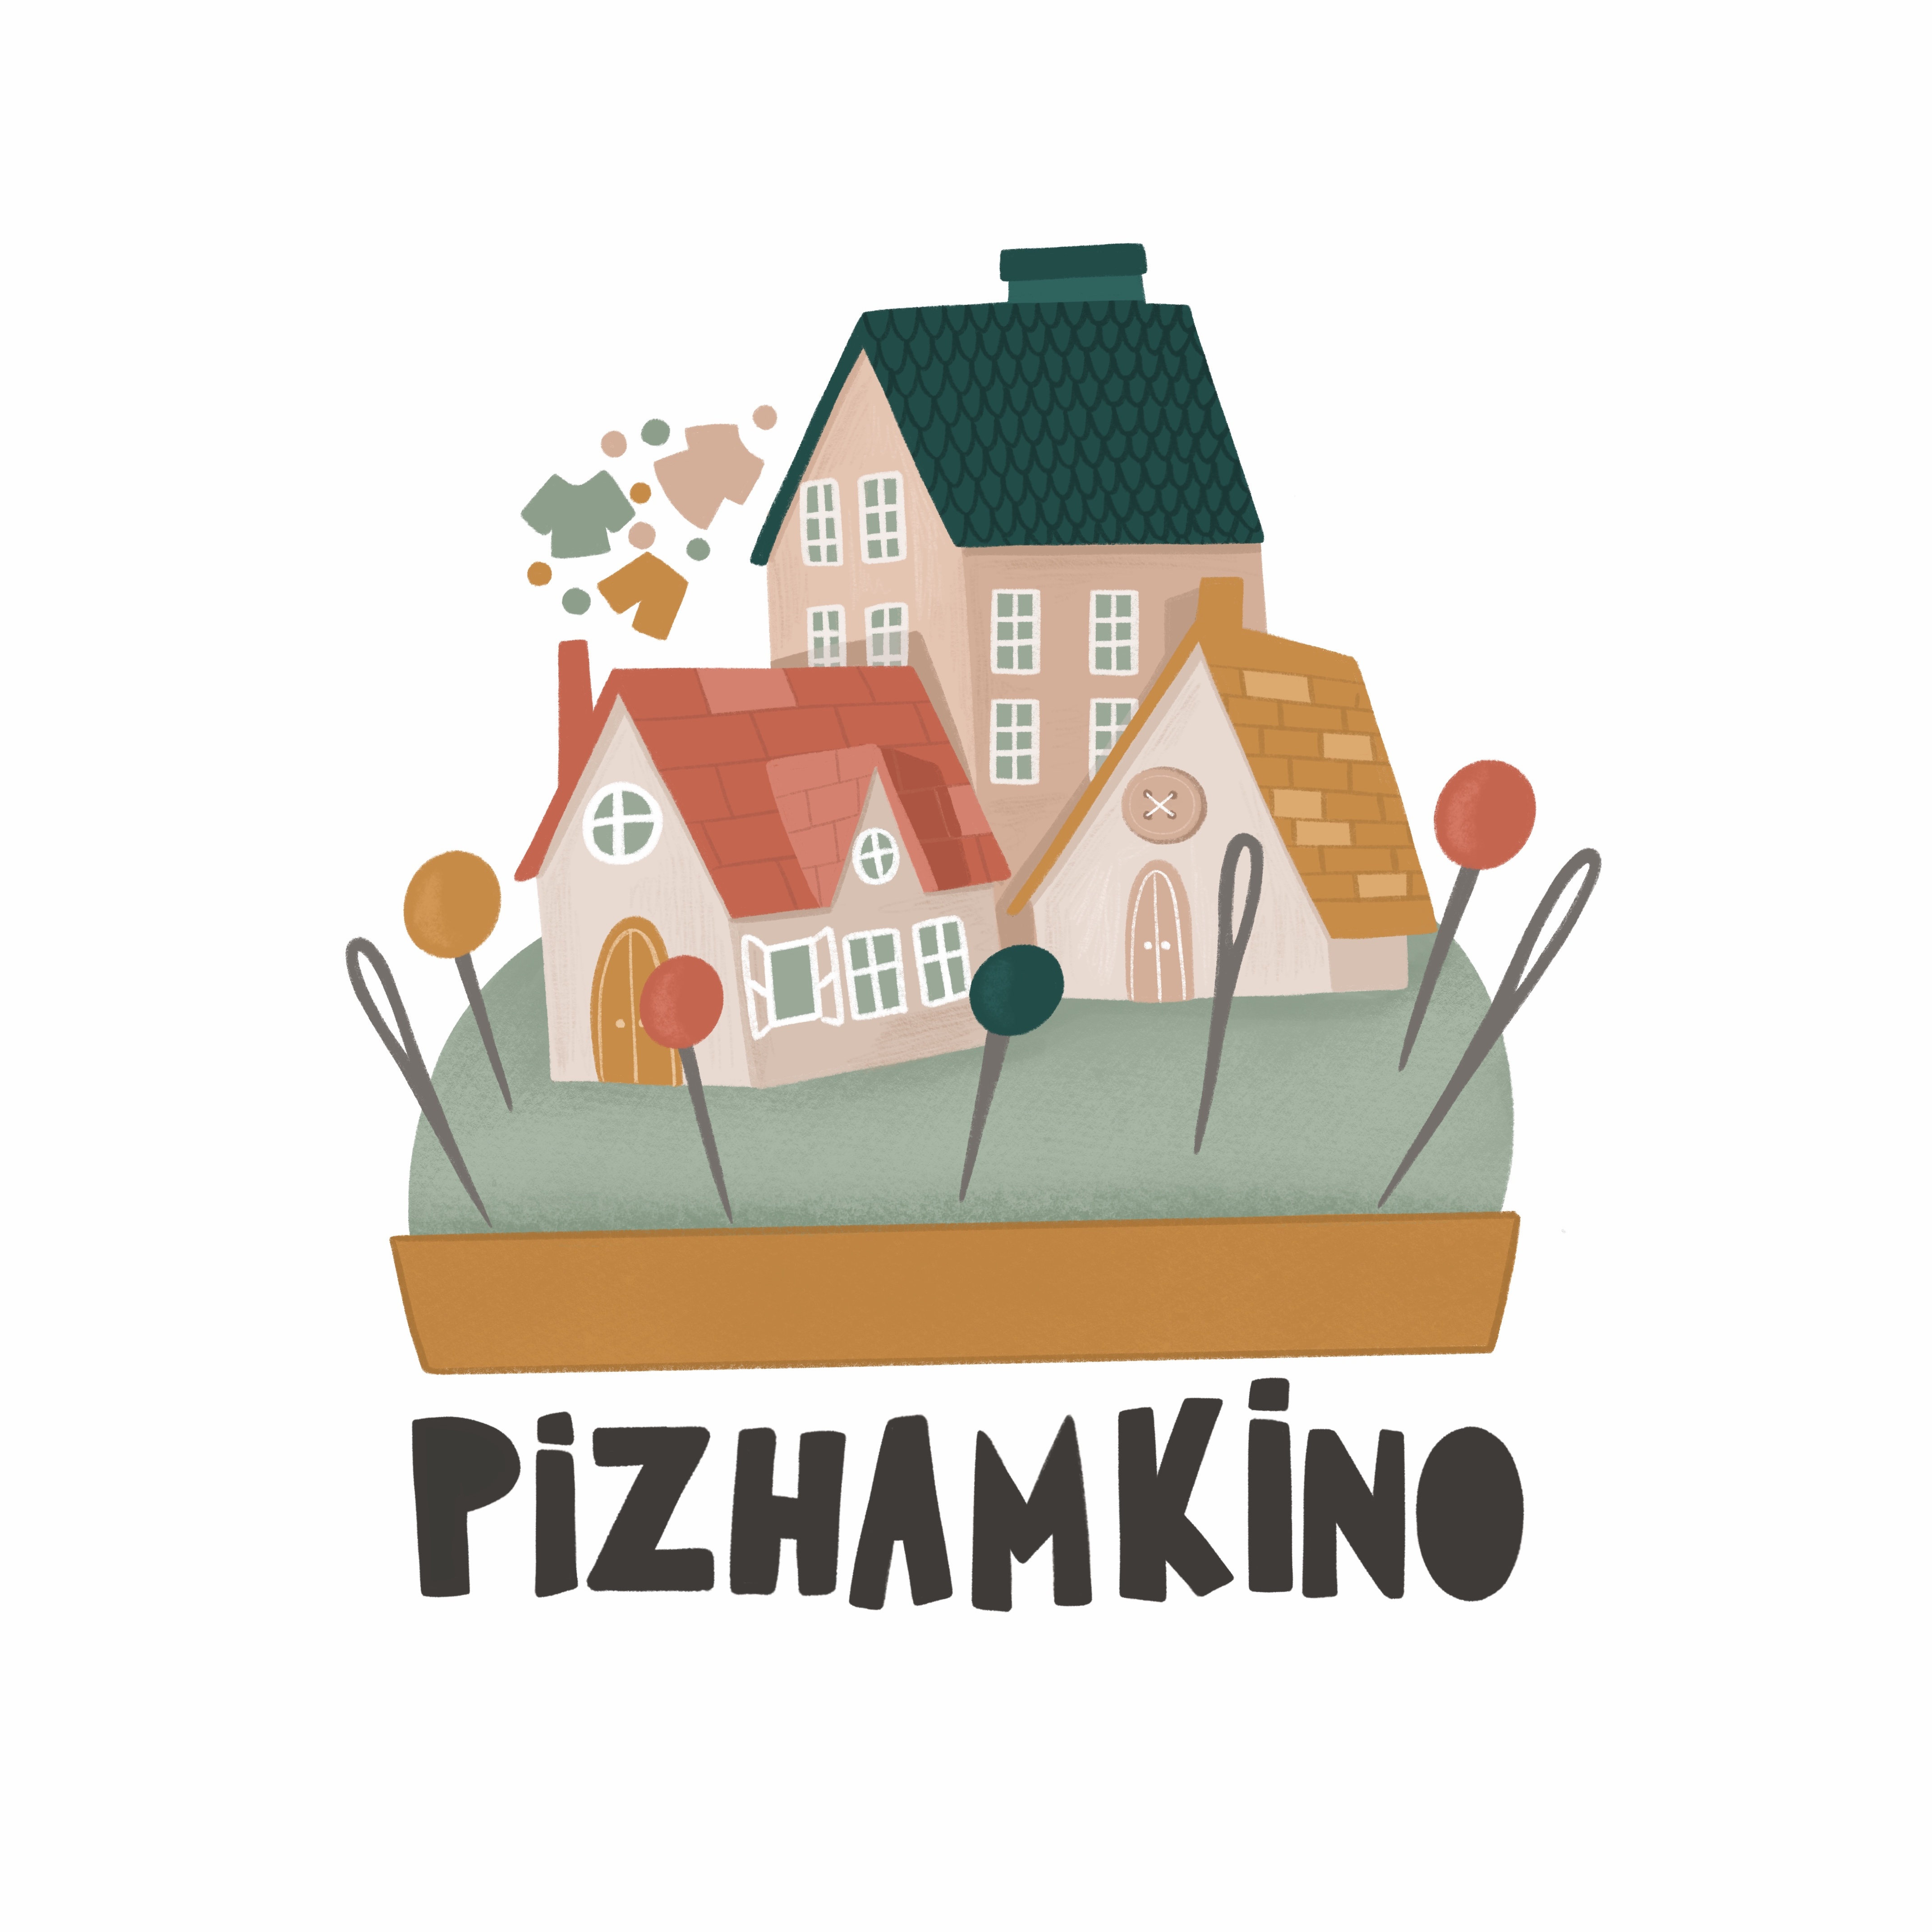 Pizhamkino